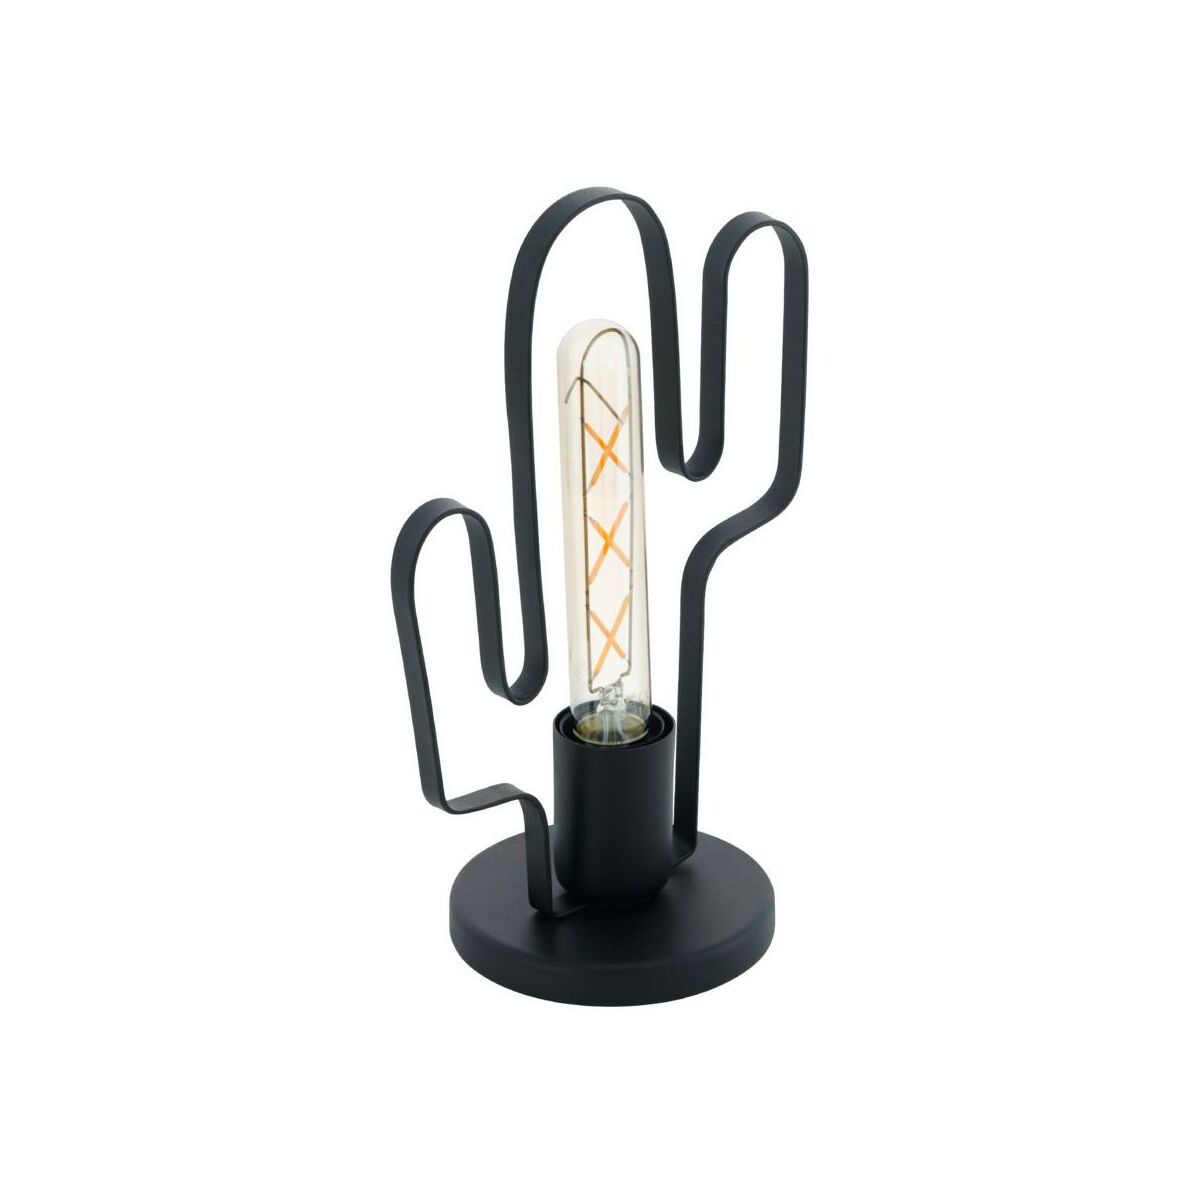 Lampa Stolowa Kaktus Czarna E27 Eglo Lampy Stolowe W Atrakcyjnej Cenie W Sklepach Leroy Merlin